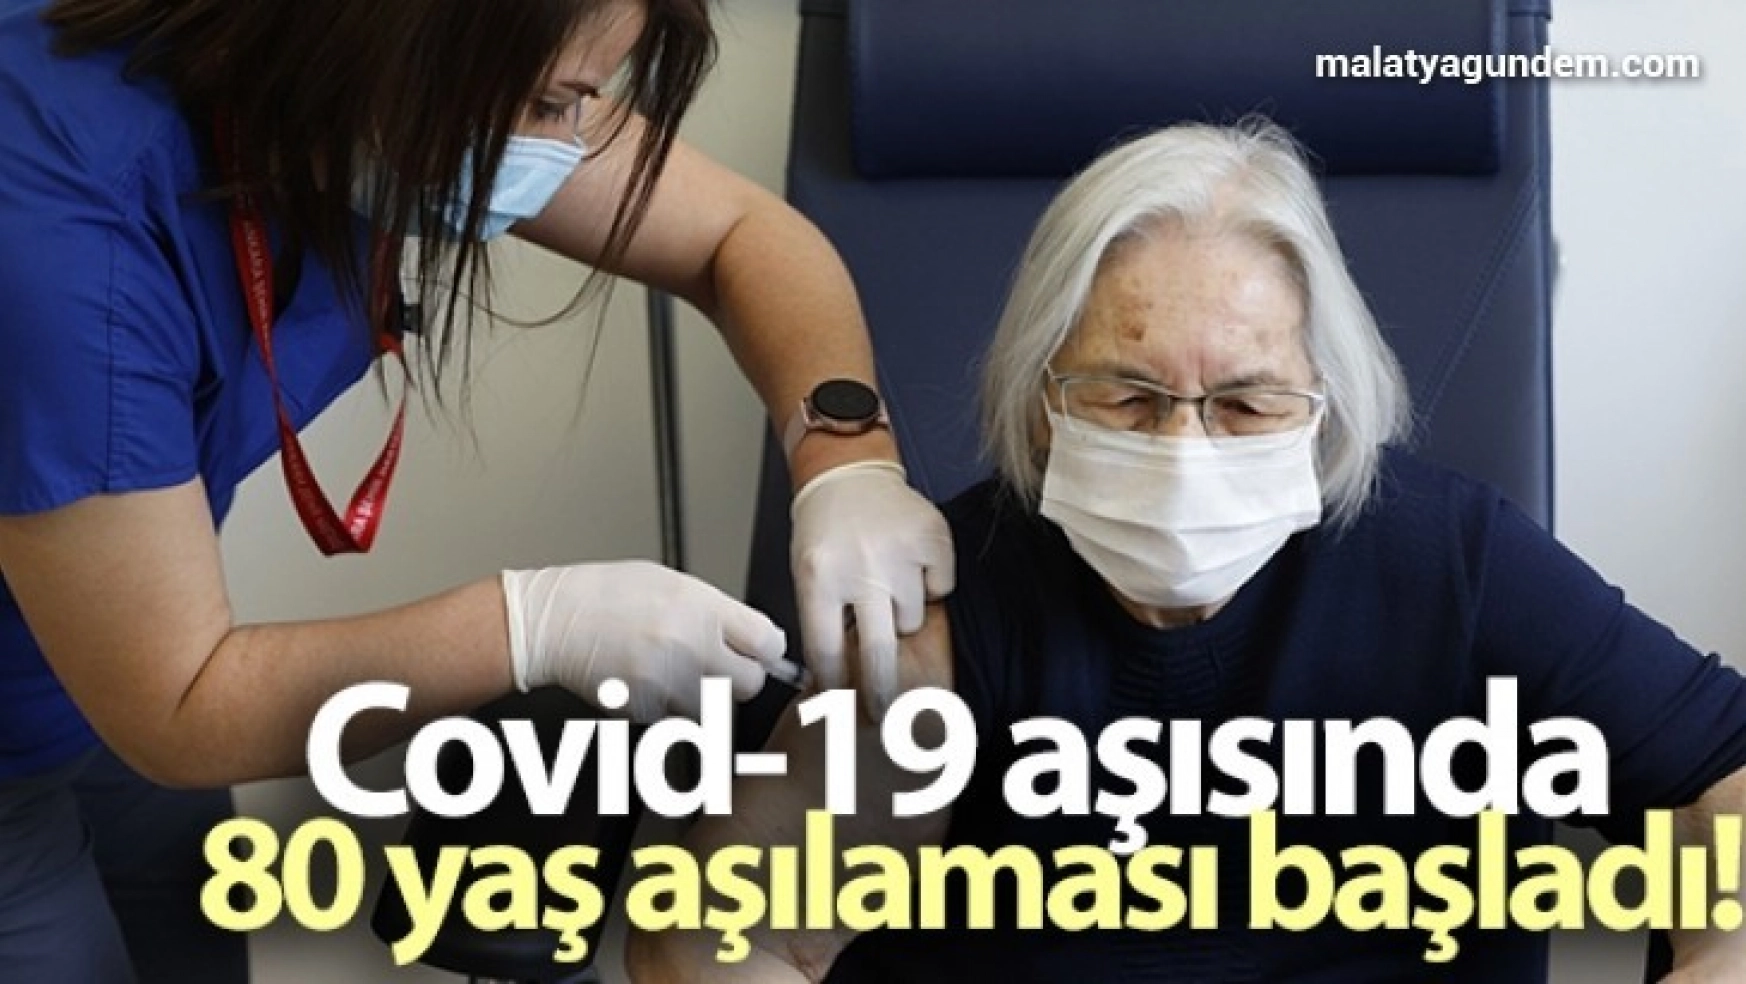 Covid-19 aşısında 80 yaş aşılaması başladı